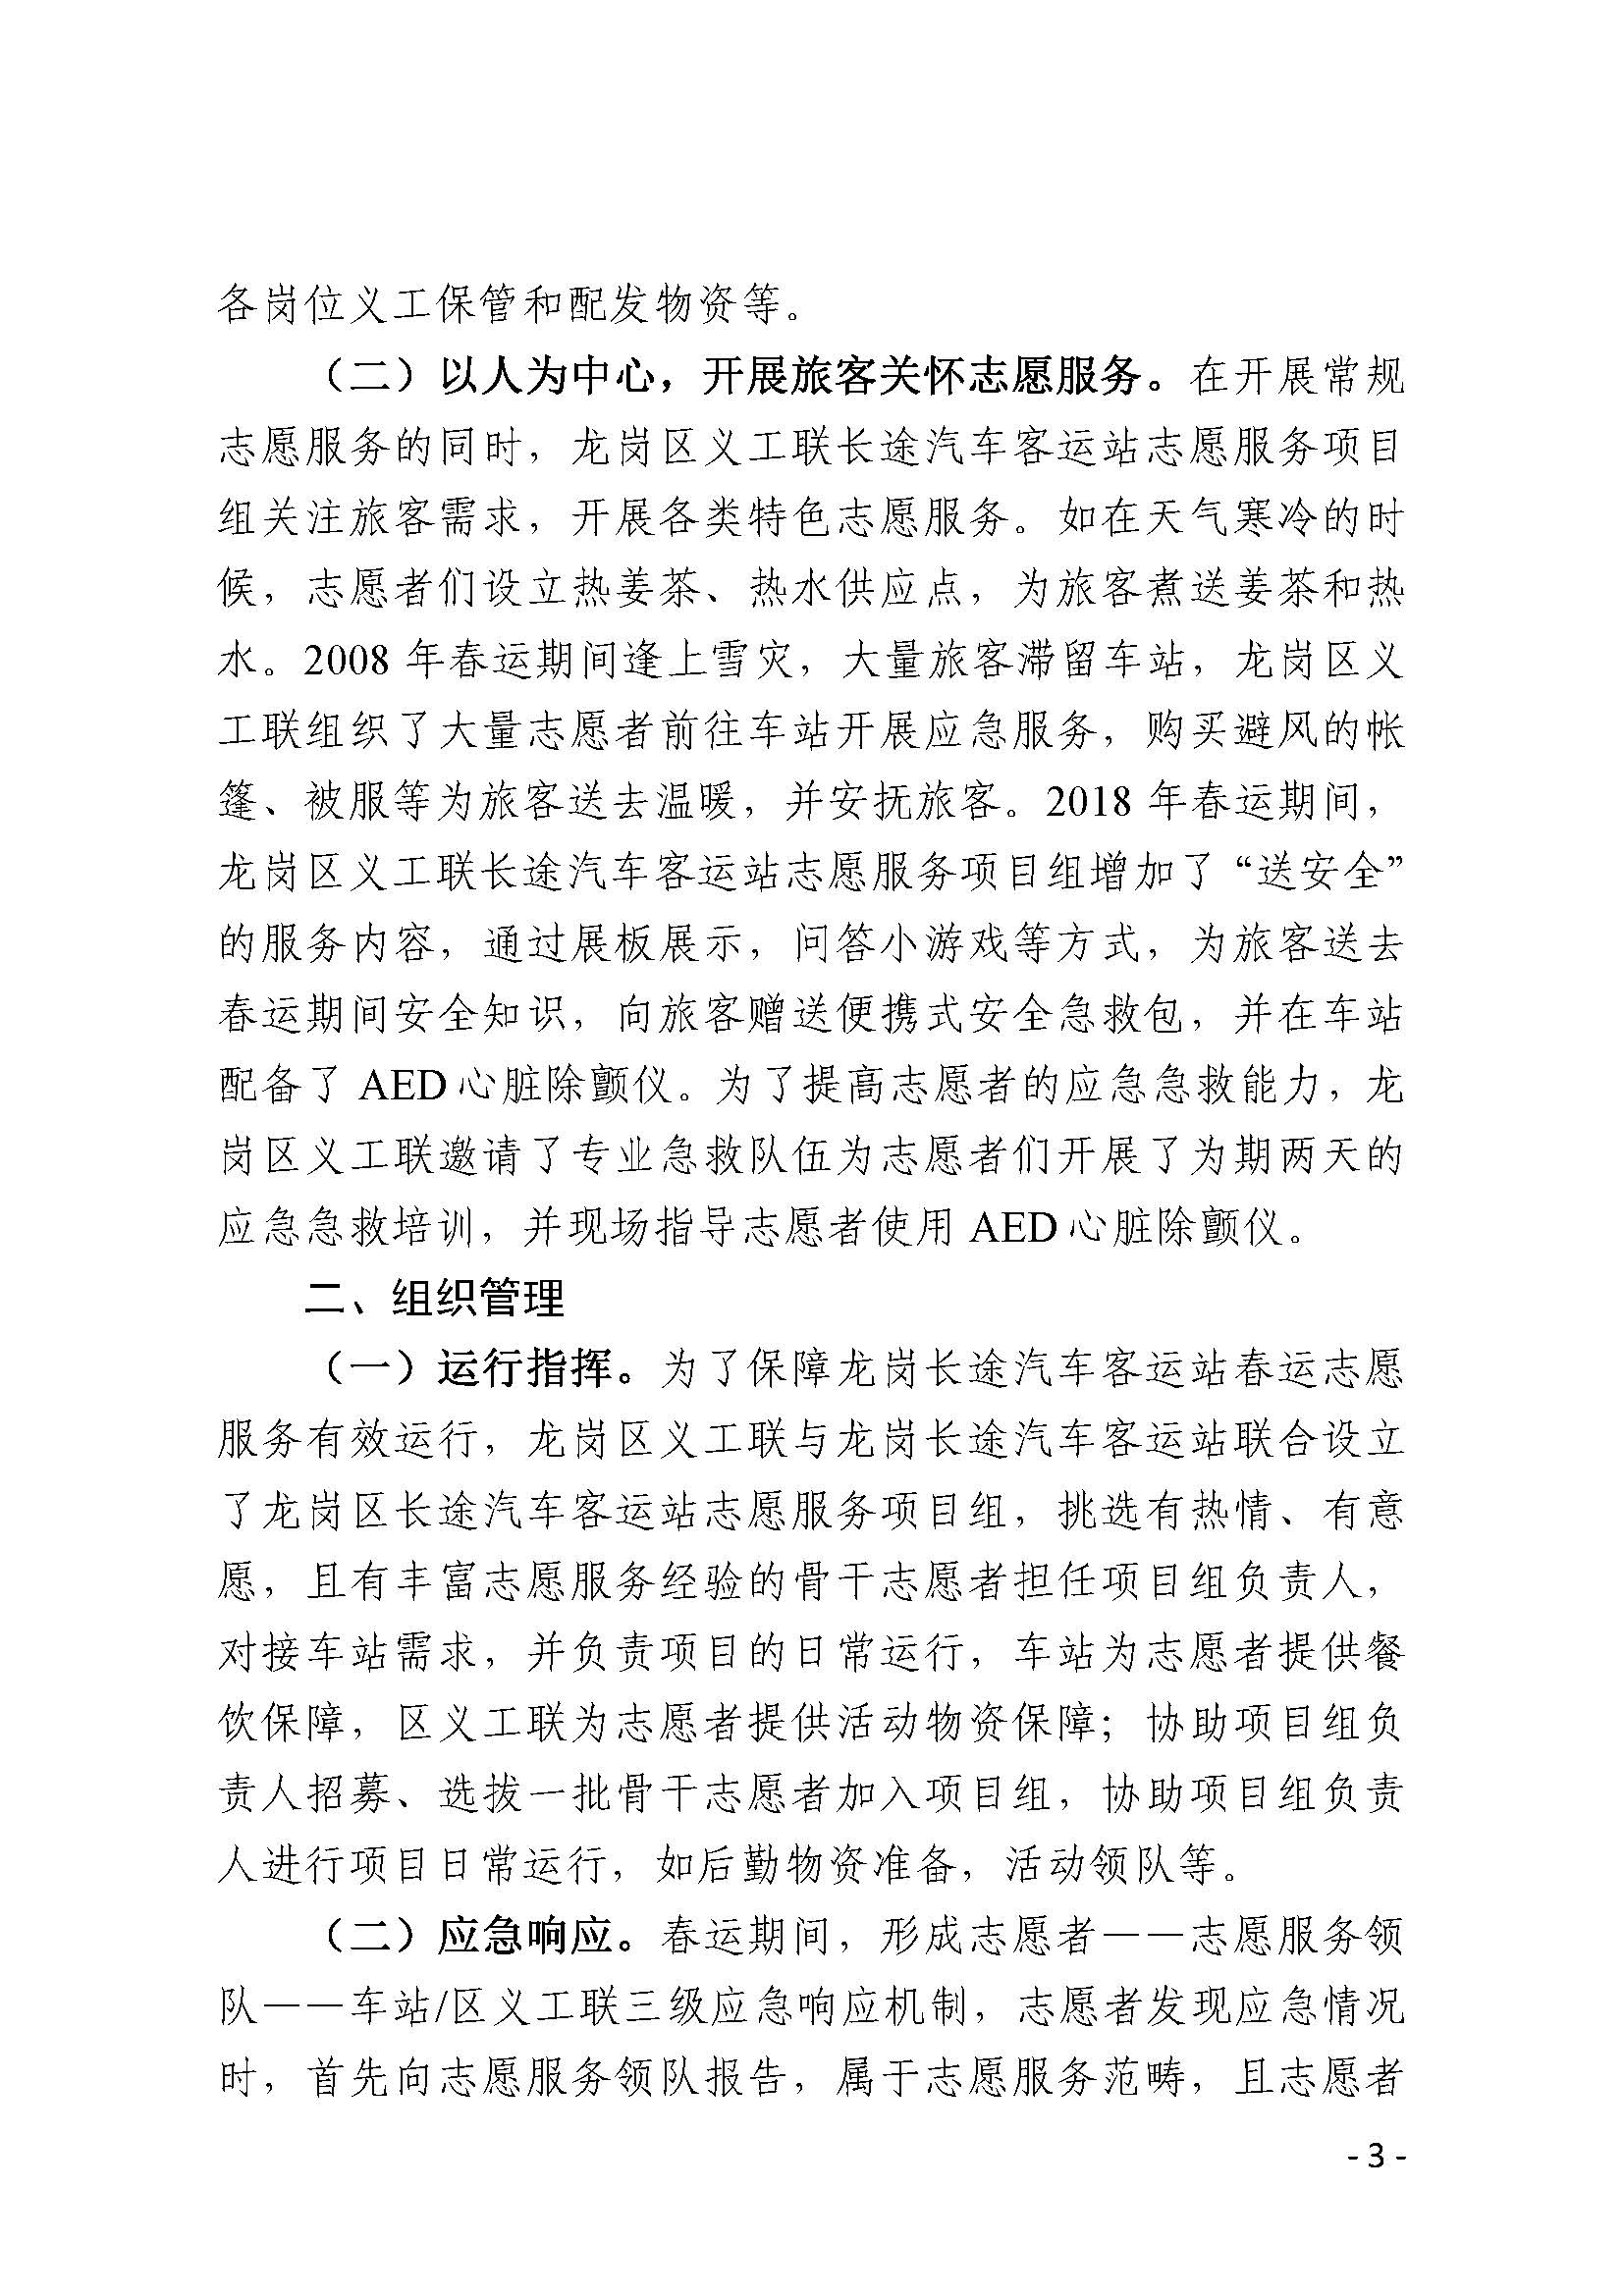 广东志愿服务工作信息（深圳客运站案例）_页面_3.jpg